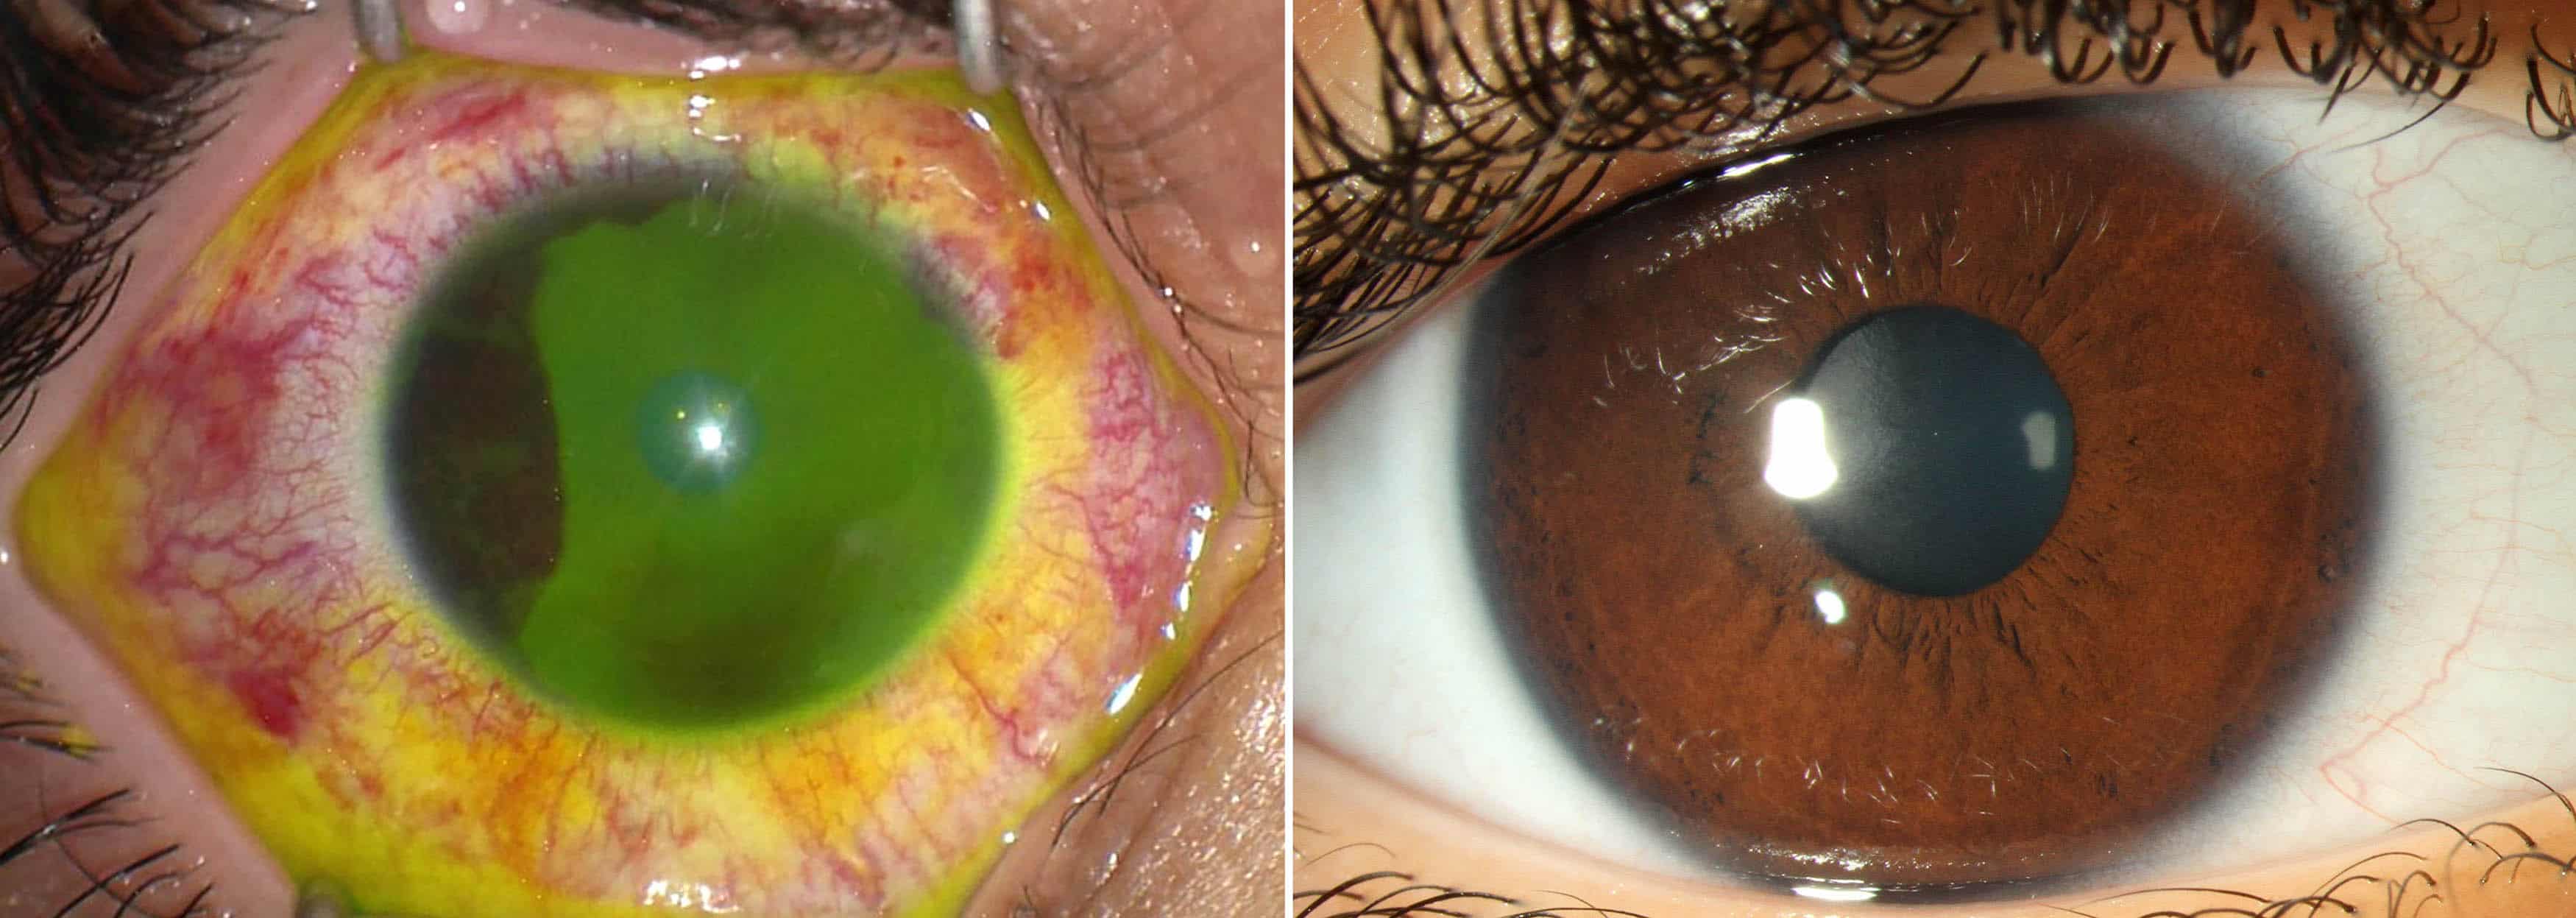 الخبراء يحذرون من أن معقمات اليد قد تؤدي إلى إصابات شديدة في العين لدى الأطفال